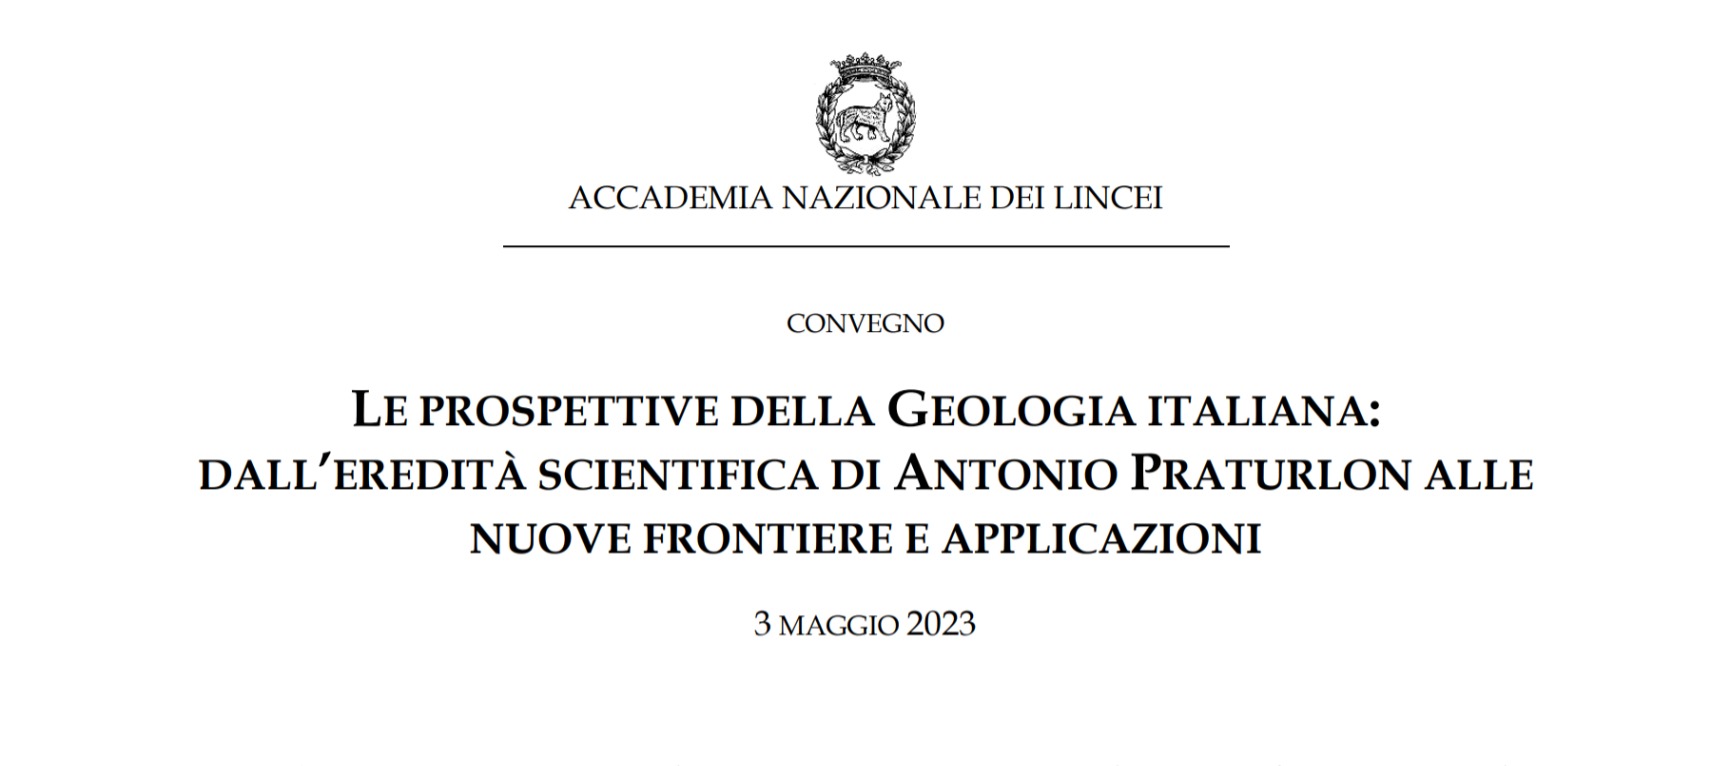 Convegno - Le prospettive della Geologia italiana